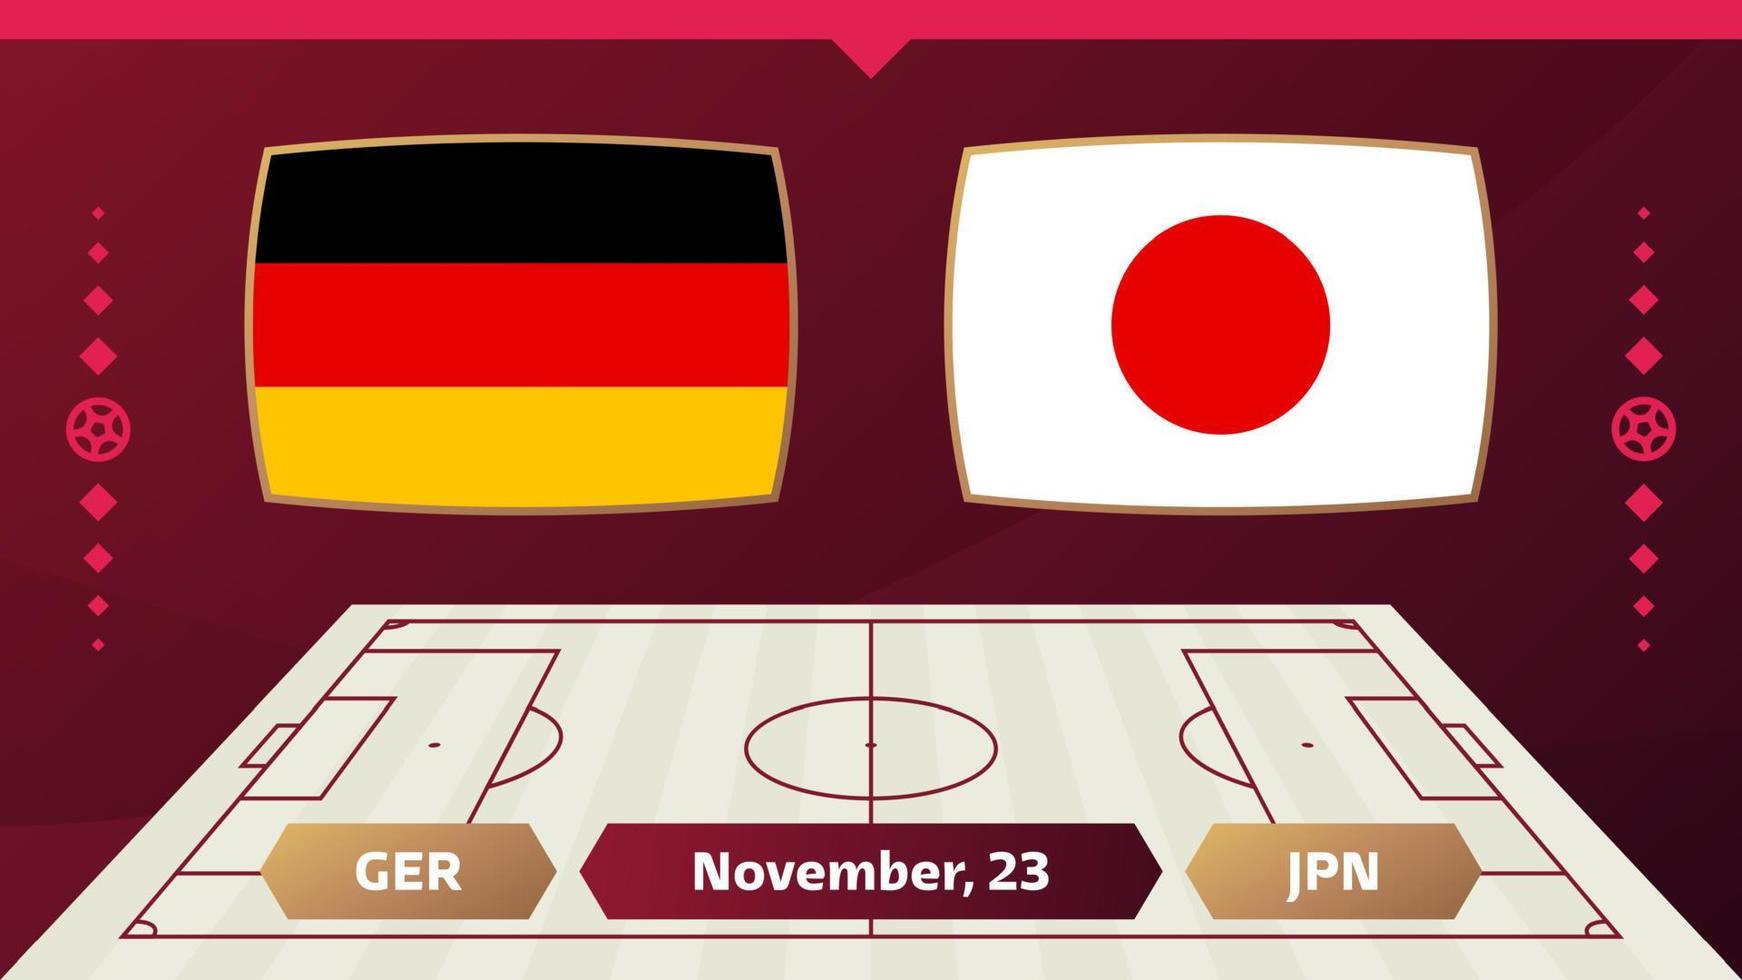 Tyskland vs Japan, fotboll 2022, grupp e. världsfotbollstävling mästerskap match kontra lag intro sport bakgrund, mästerskap konkurrens sista affisch, vektorillustration. vektor